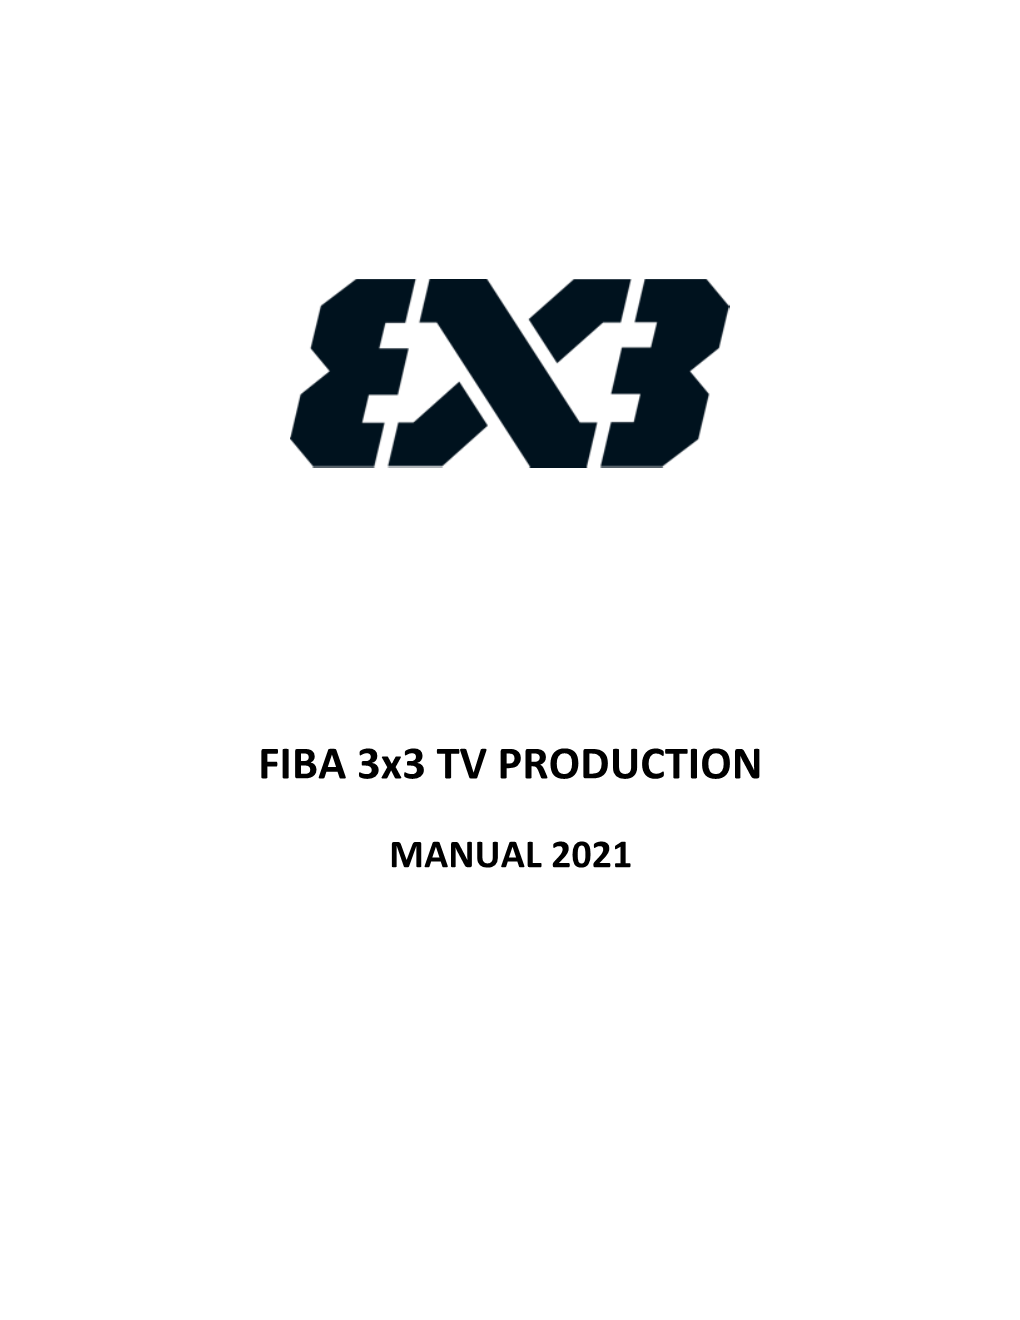 FIBA 3X3 TV Manual